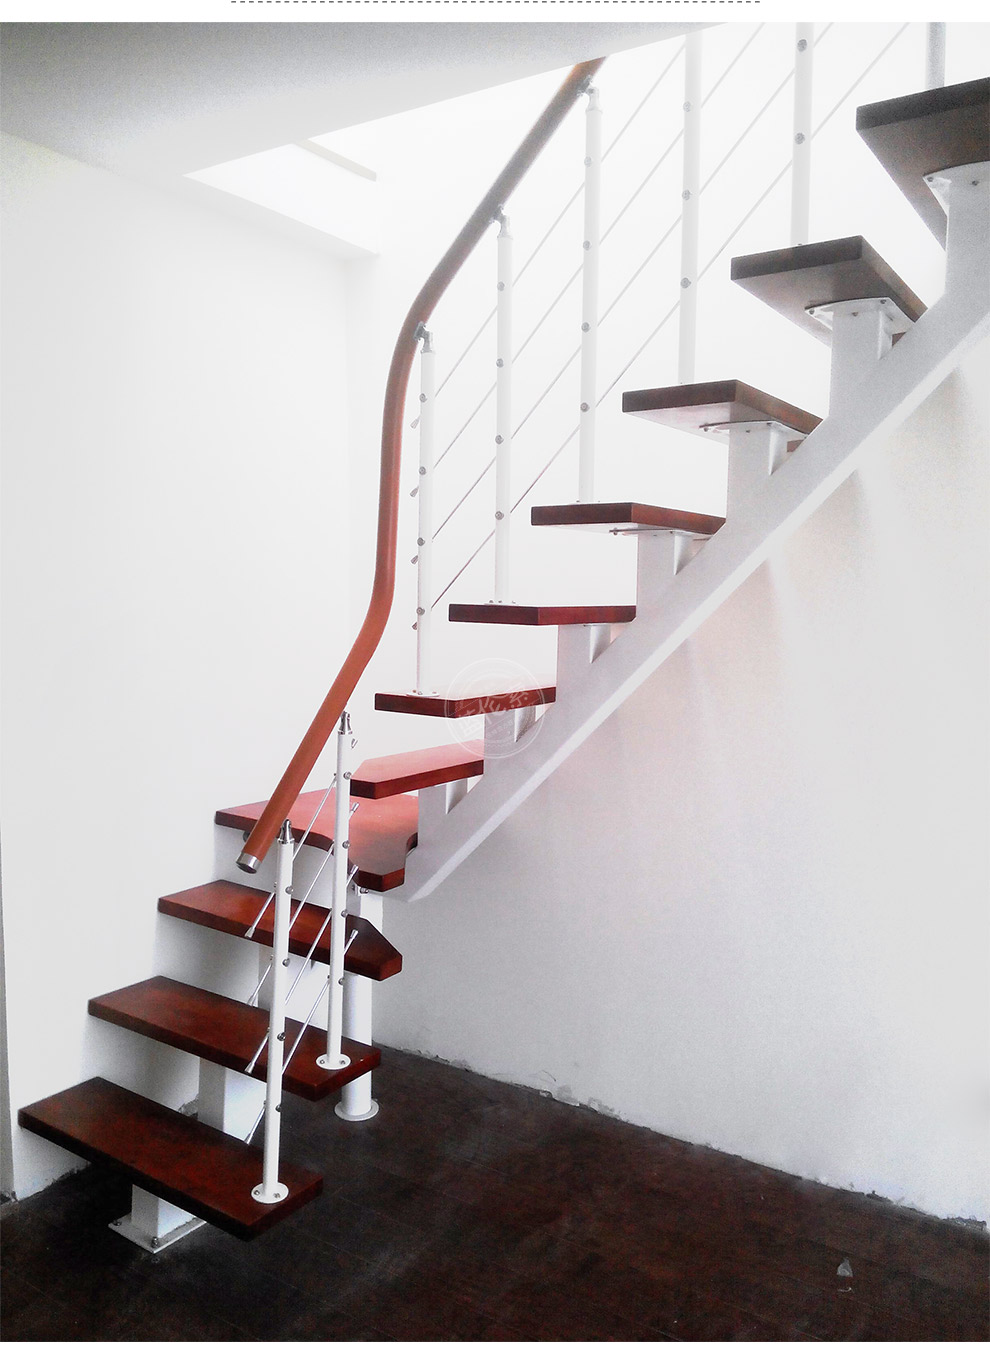 阁楼木楼梯装修效果图-阁楼木楼梯价格/家庭装修效果图大全/木楼梯上